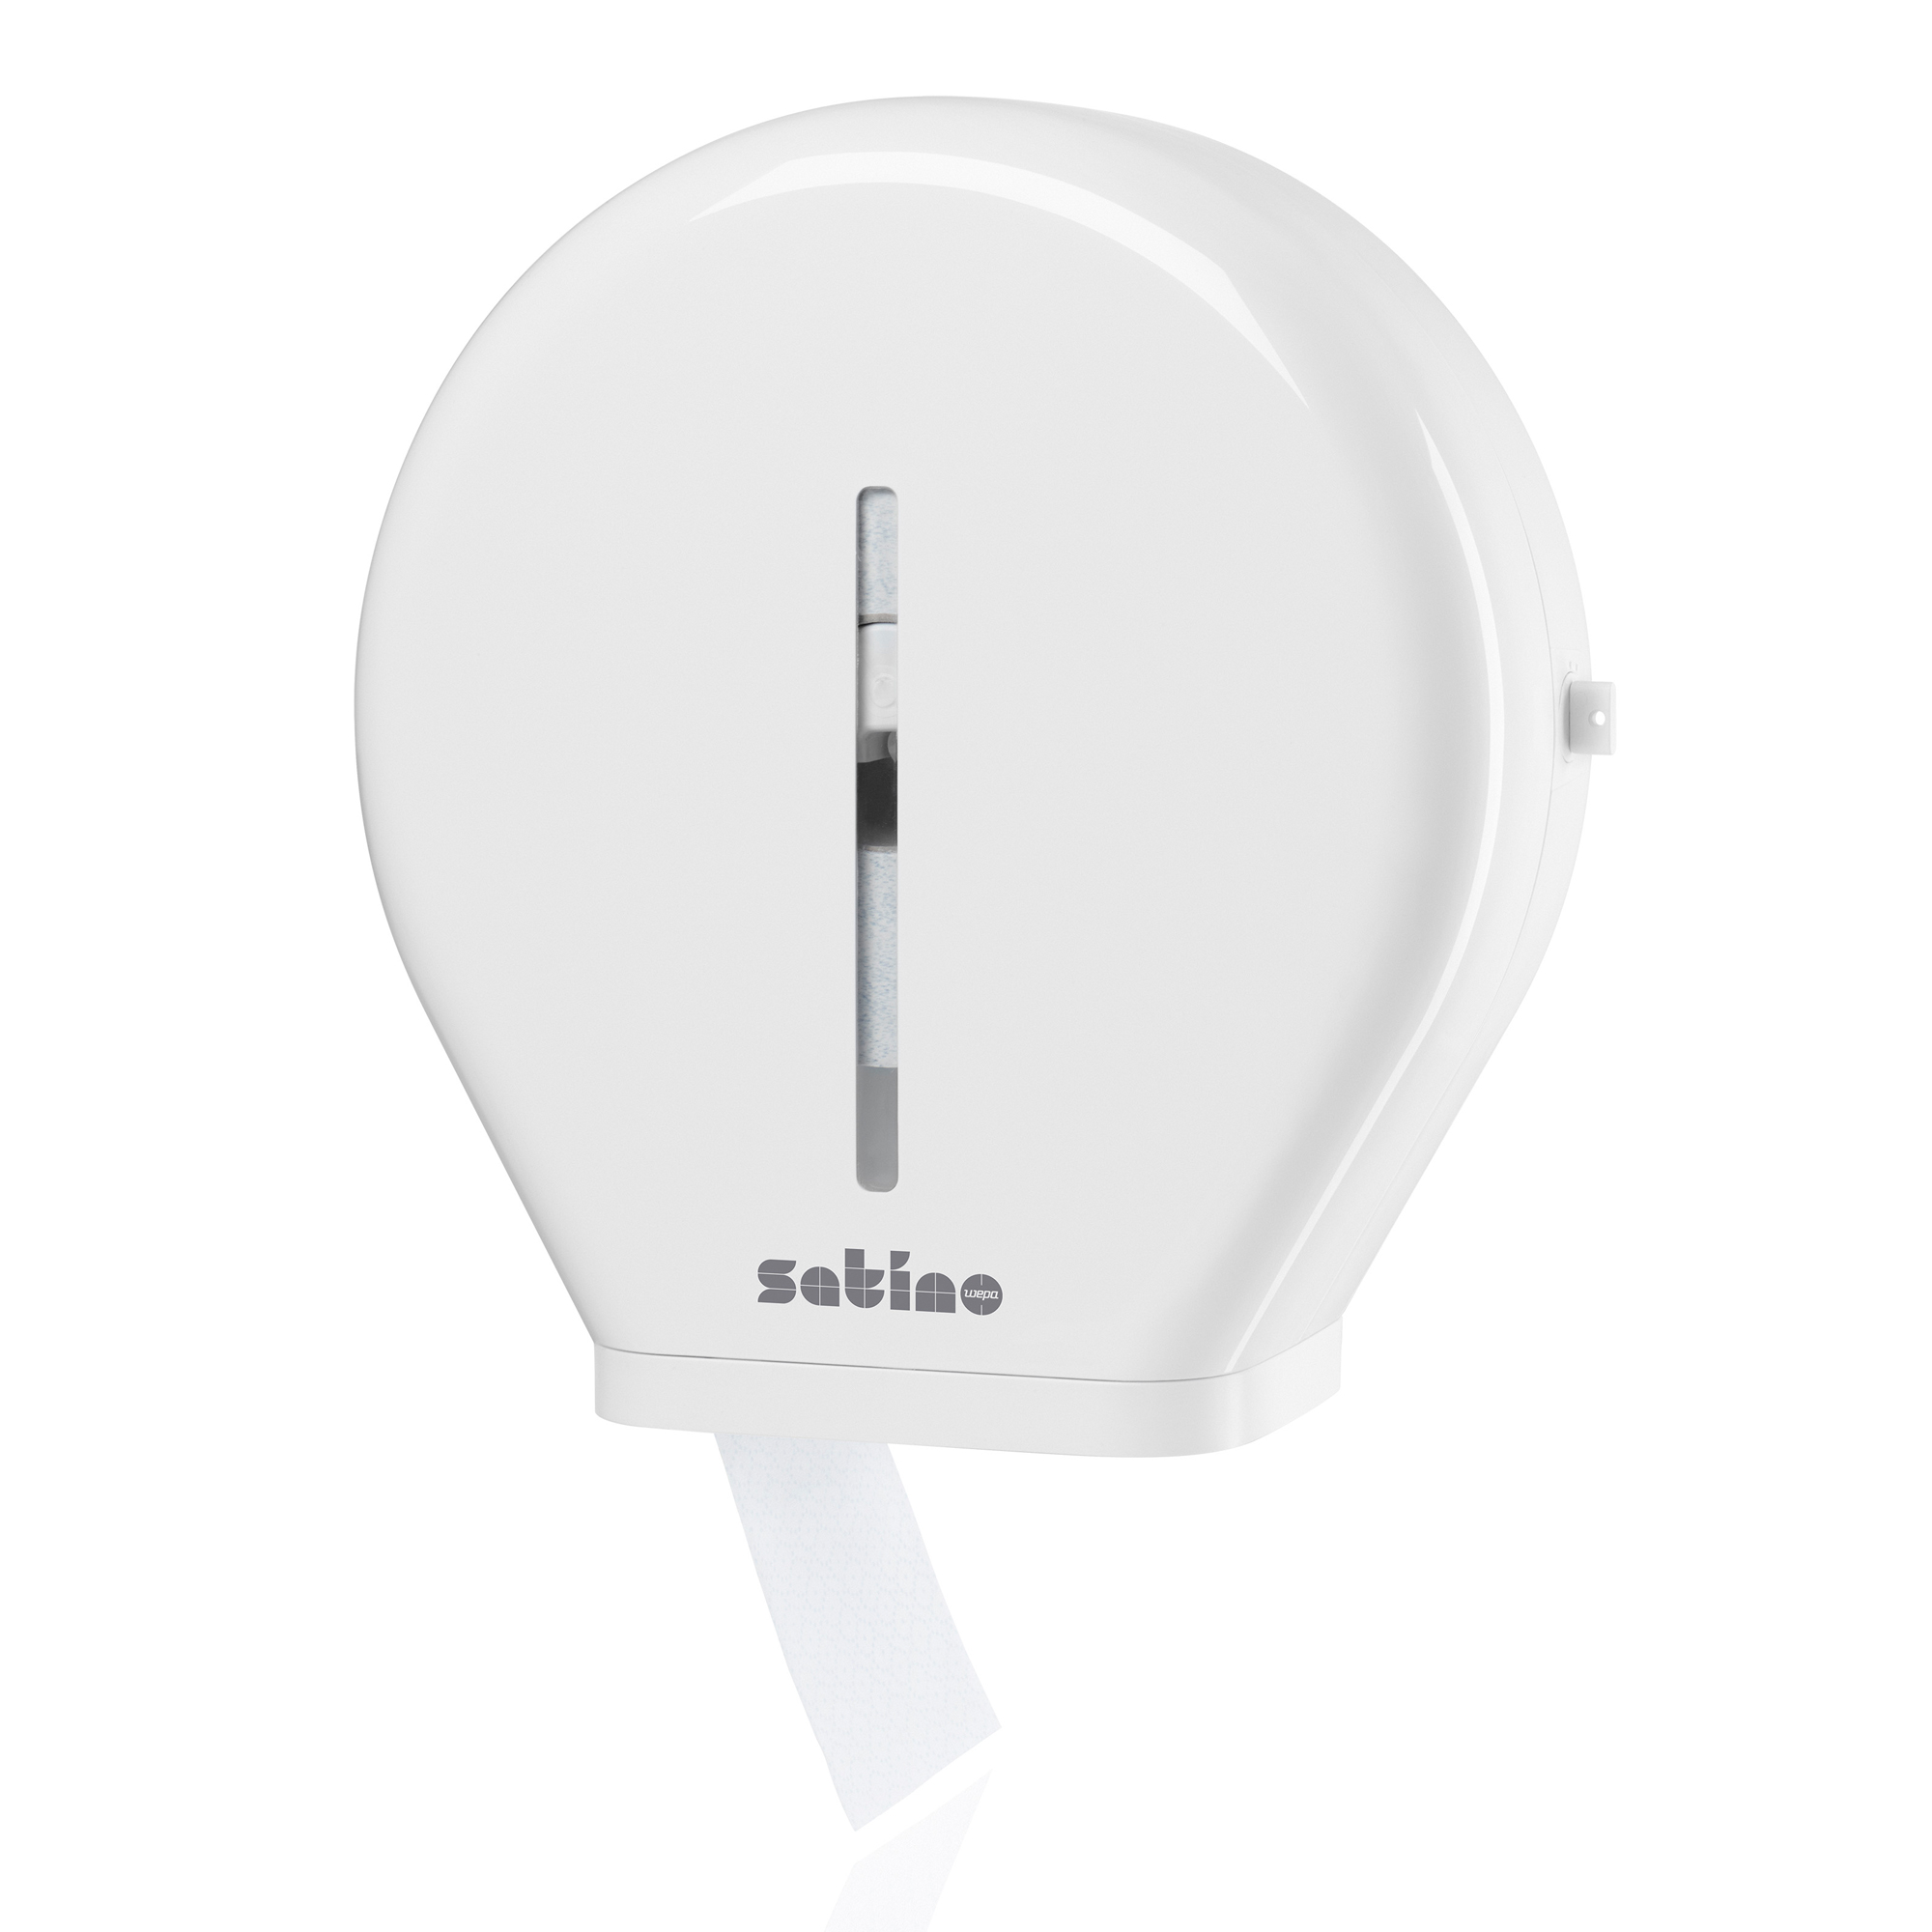 Satino by Wepa Toilettenpapierspender Maxi Jumbo 331040_1